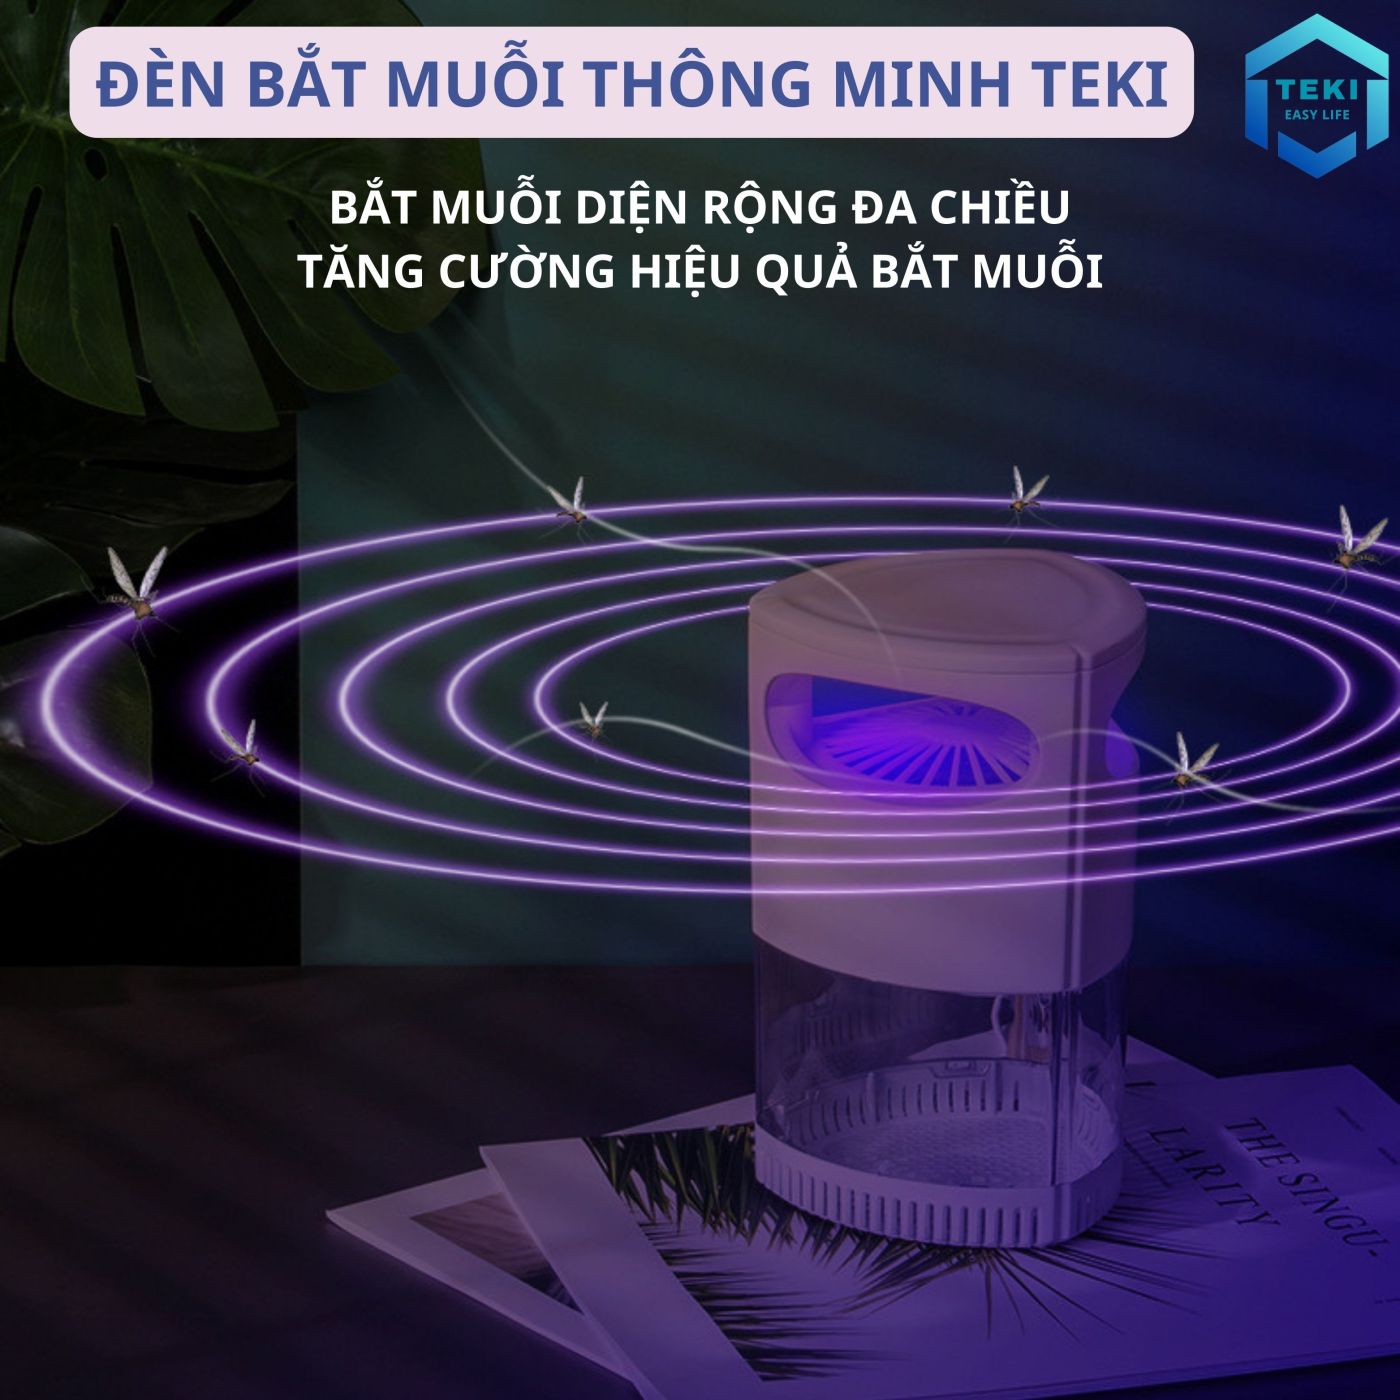 Đèn Bắt Muỗi Thông Minh TEKI - Máy bắt muỗi sử dụng quạt và ánh sáng UV, Kiêm Đèn Ngủ, Cổng Sạc USB